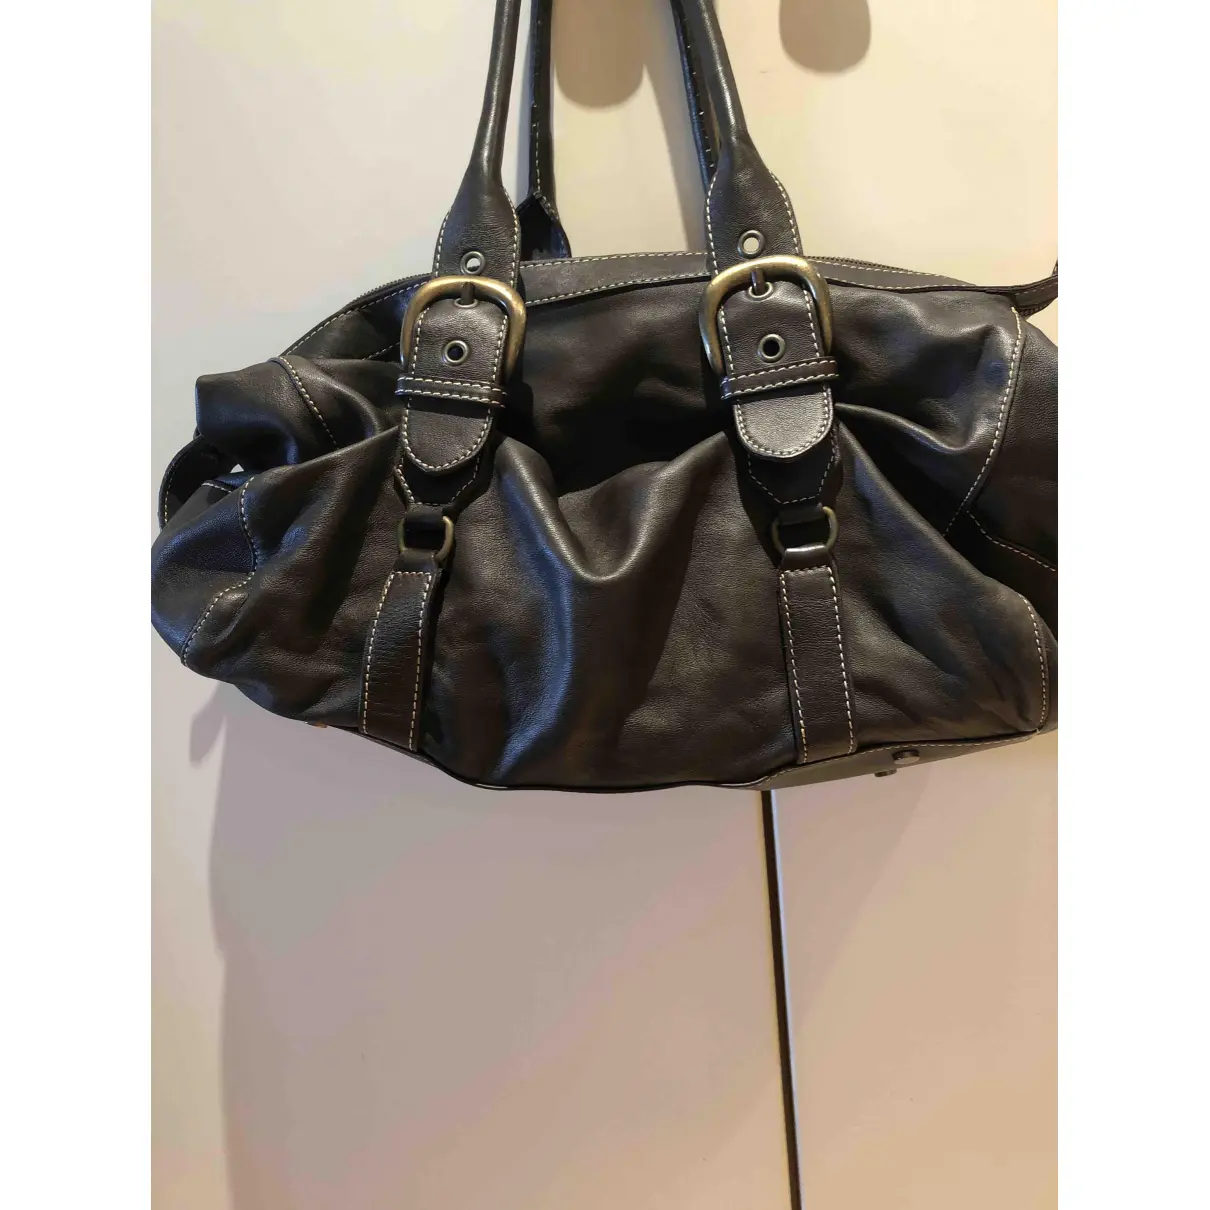 Buy Marella Leather handbag online